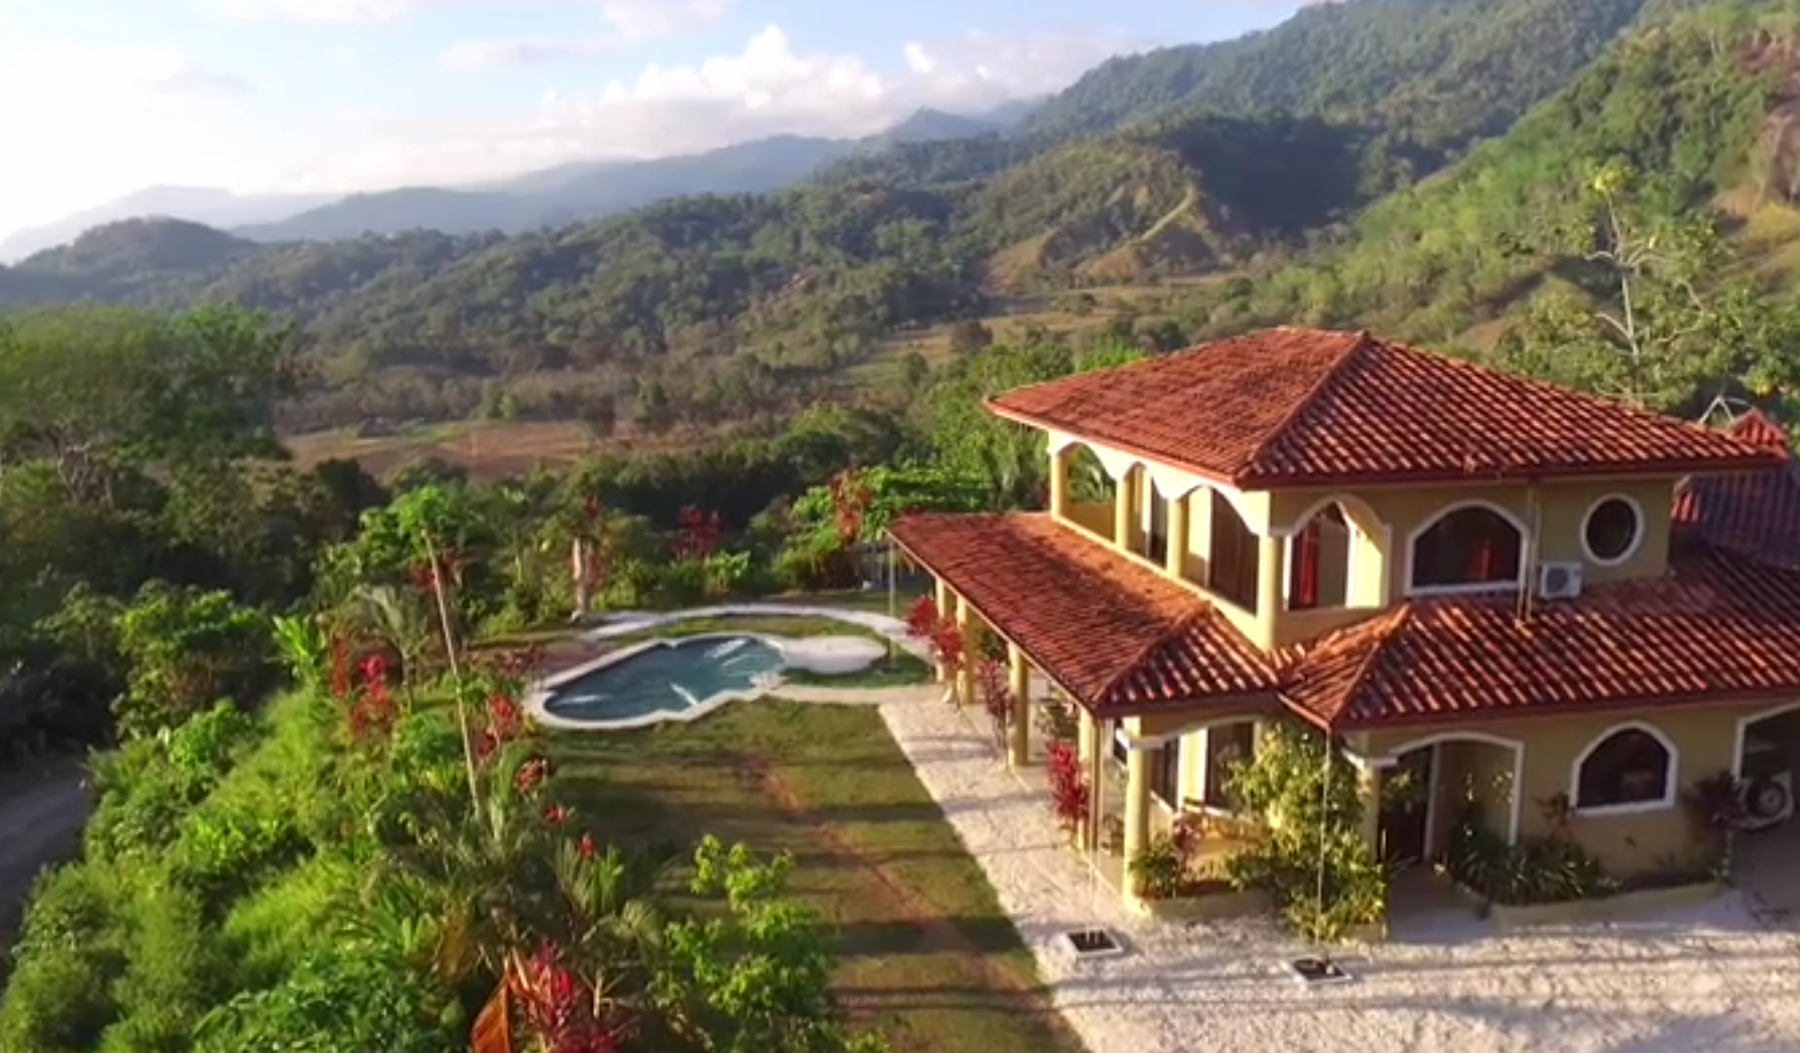 Drone Video of Las Villas de San Buenas and Region